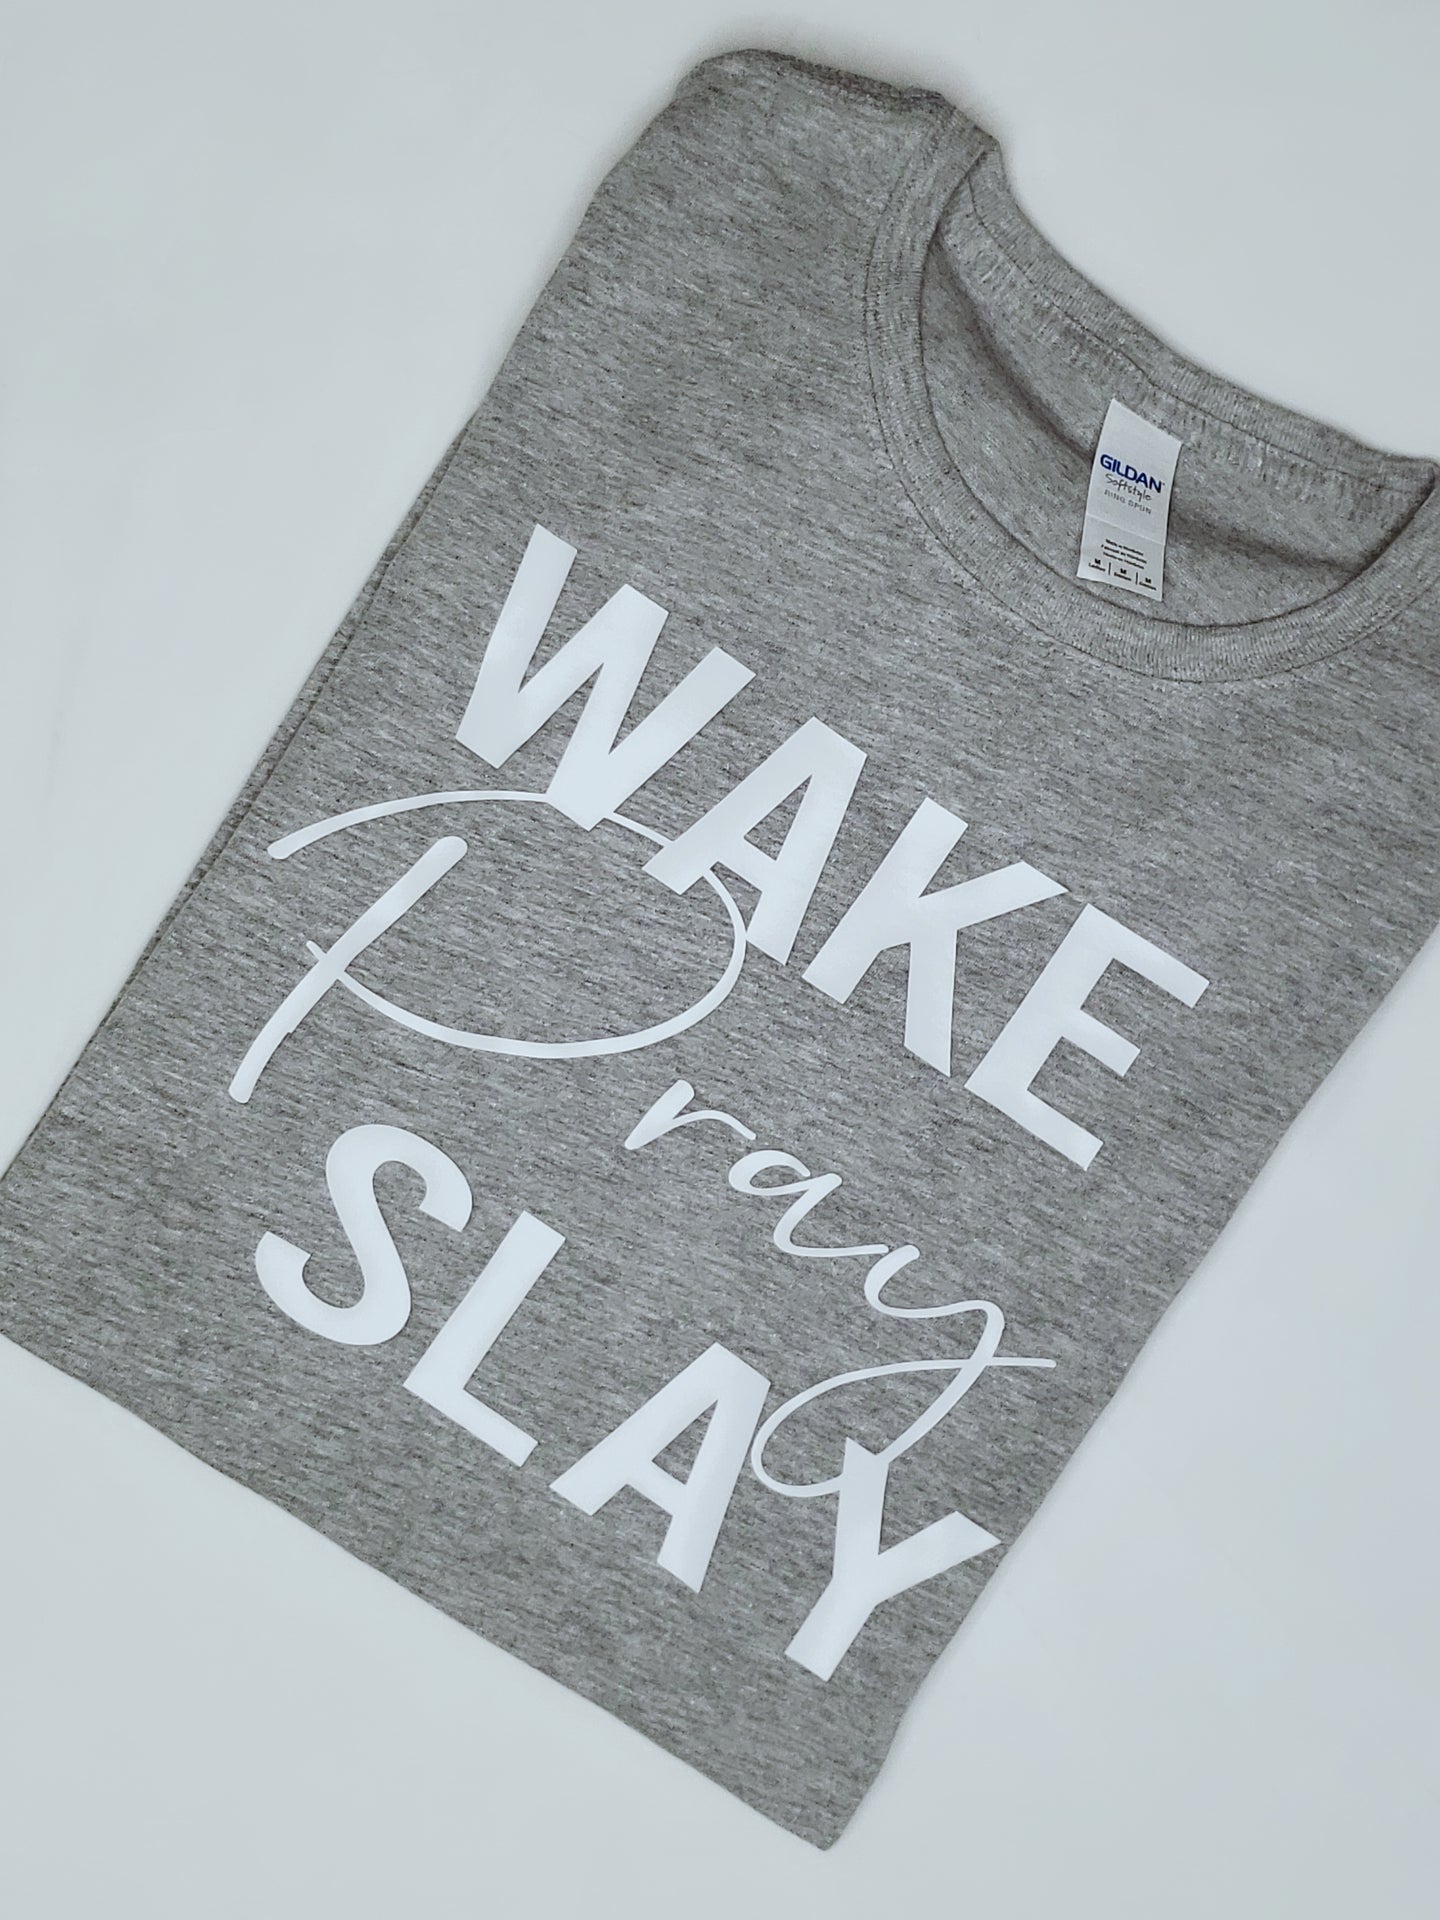 Wake. Pray. Slay